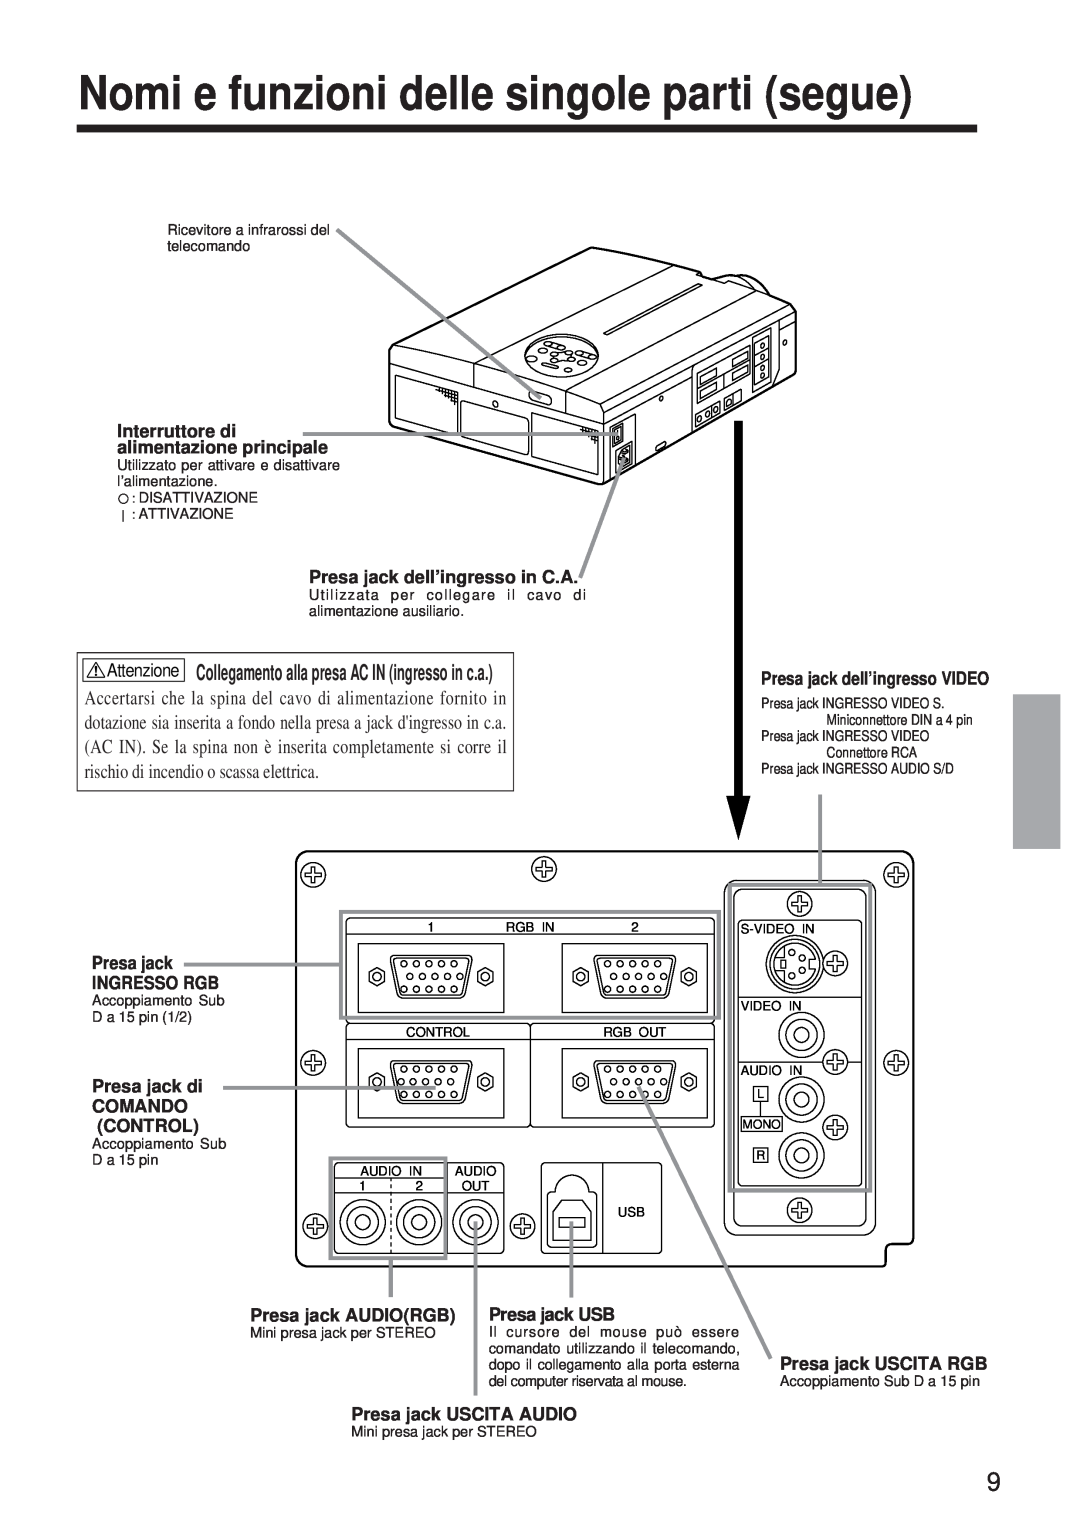 BOXLIGHT MP-650i Nomi e funzioni delle singole parti segue, Attenzione Collegamento alla presa AC IN ingresso in c.a 